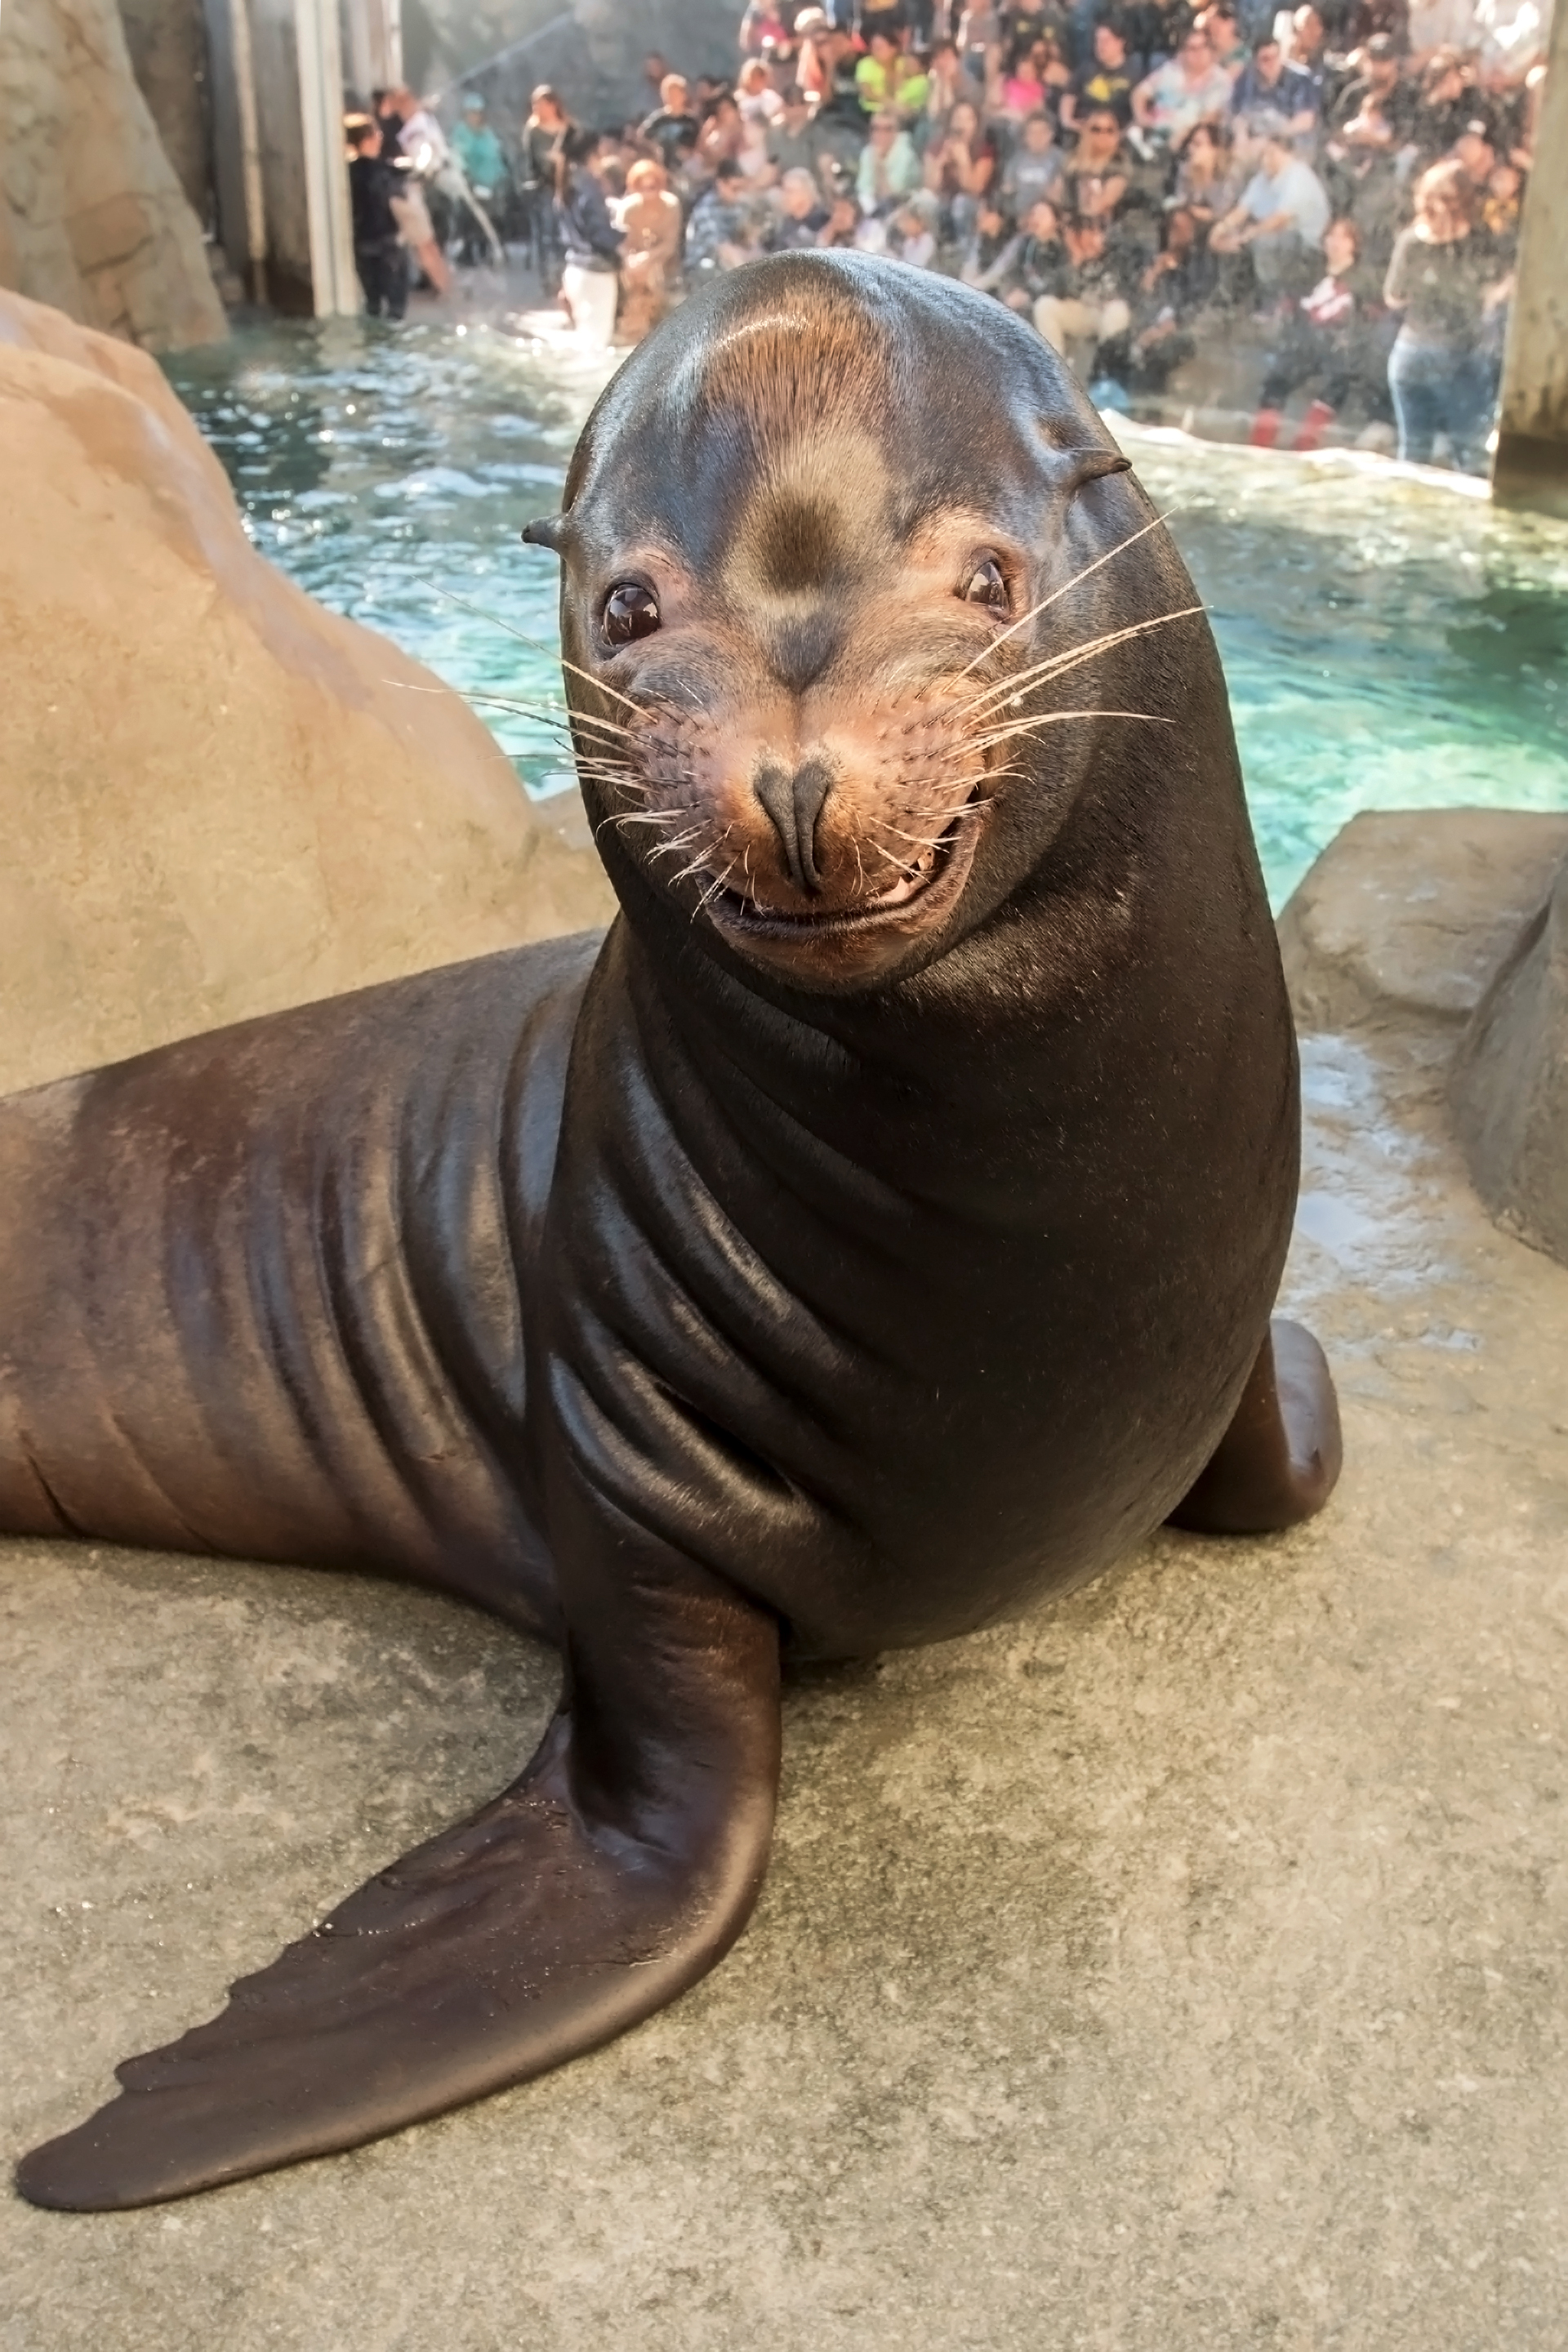 Sea lion smiling in exhibit